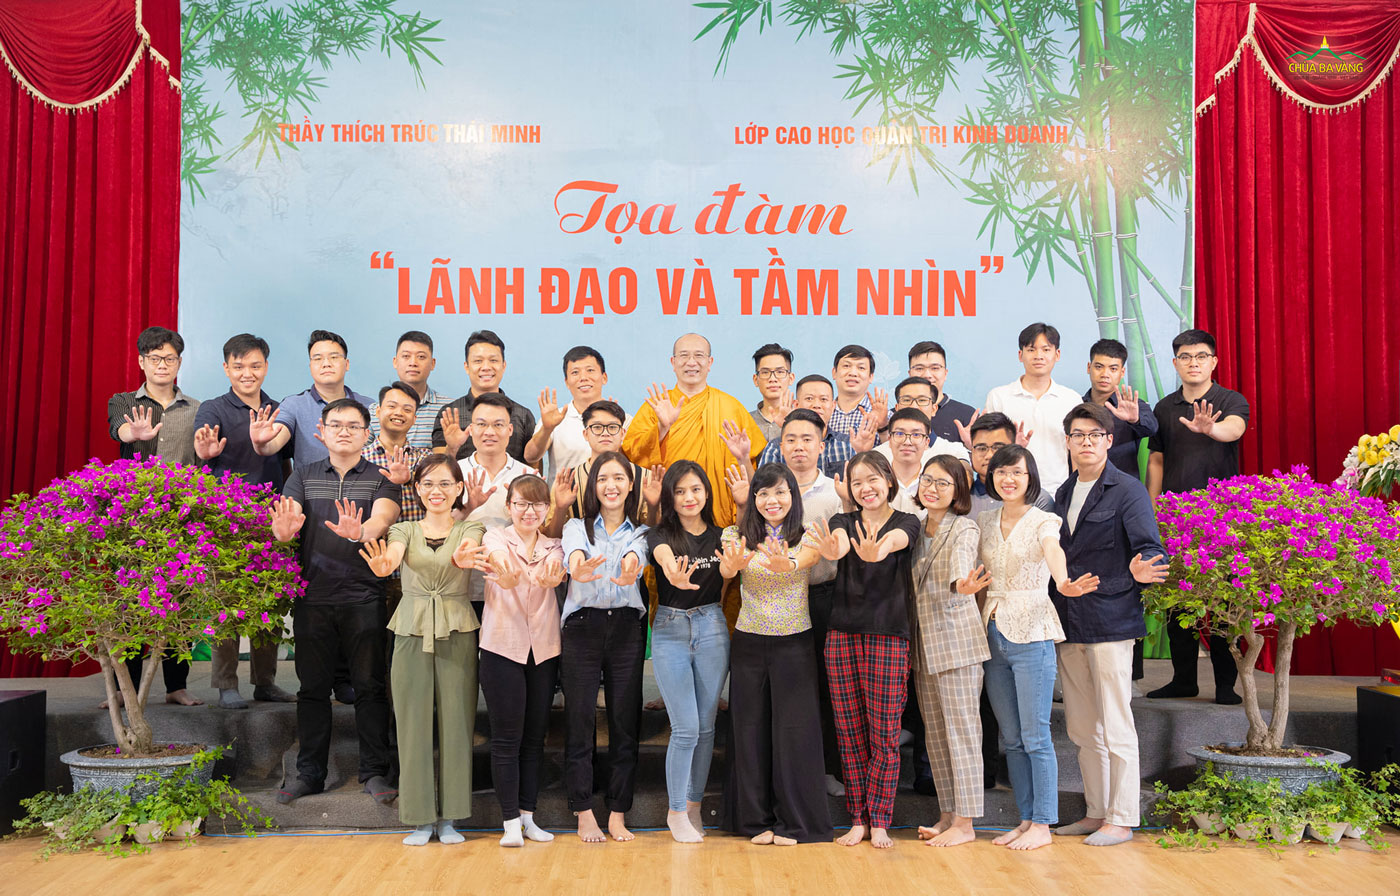 Lớp Cao học Quản trị Kinh doanh trường Đại học Kinh tế Quốc dân chụp ảnh lưu niệm cùng Sư Phụ Thích Trúc Thái Minh